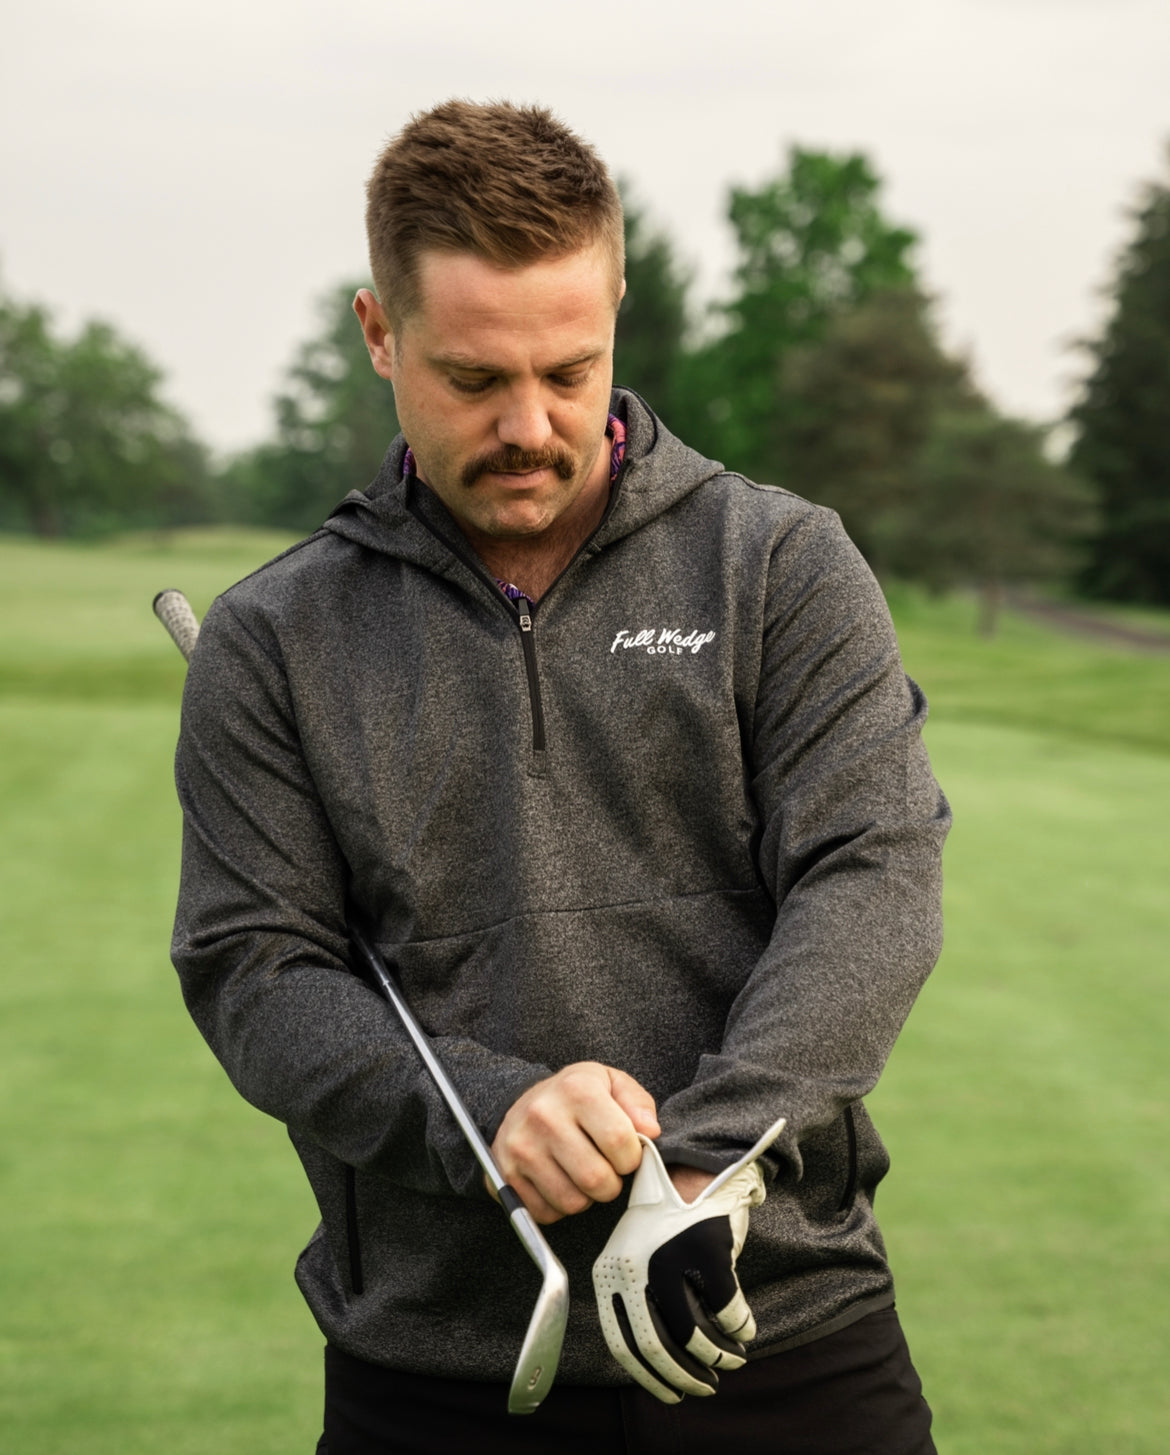 Men's Outerwear – Full Wedge Golf